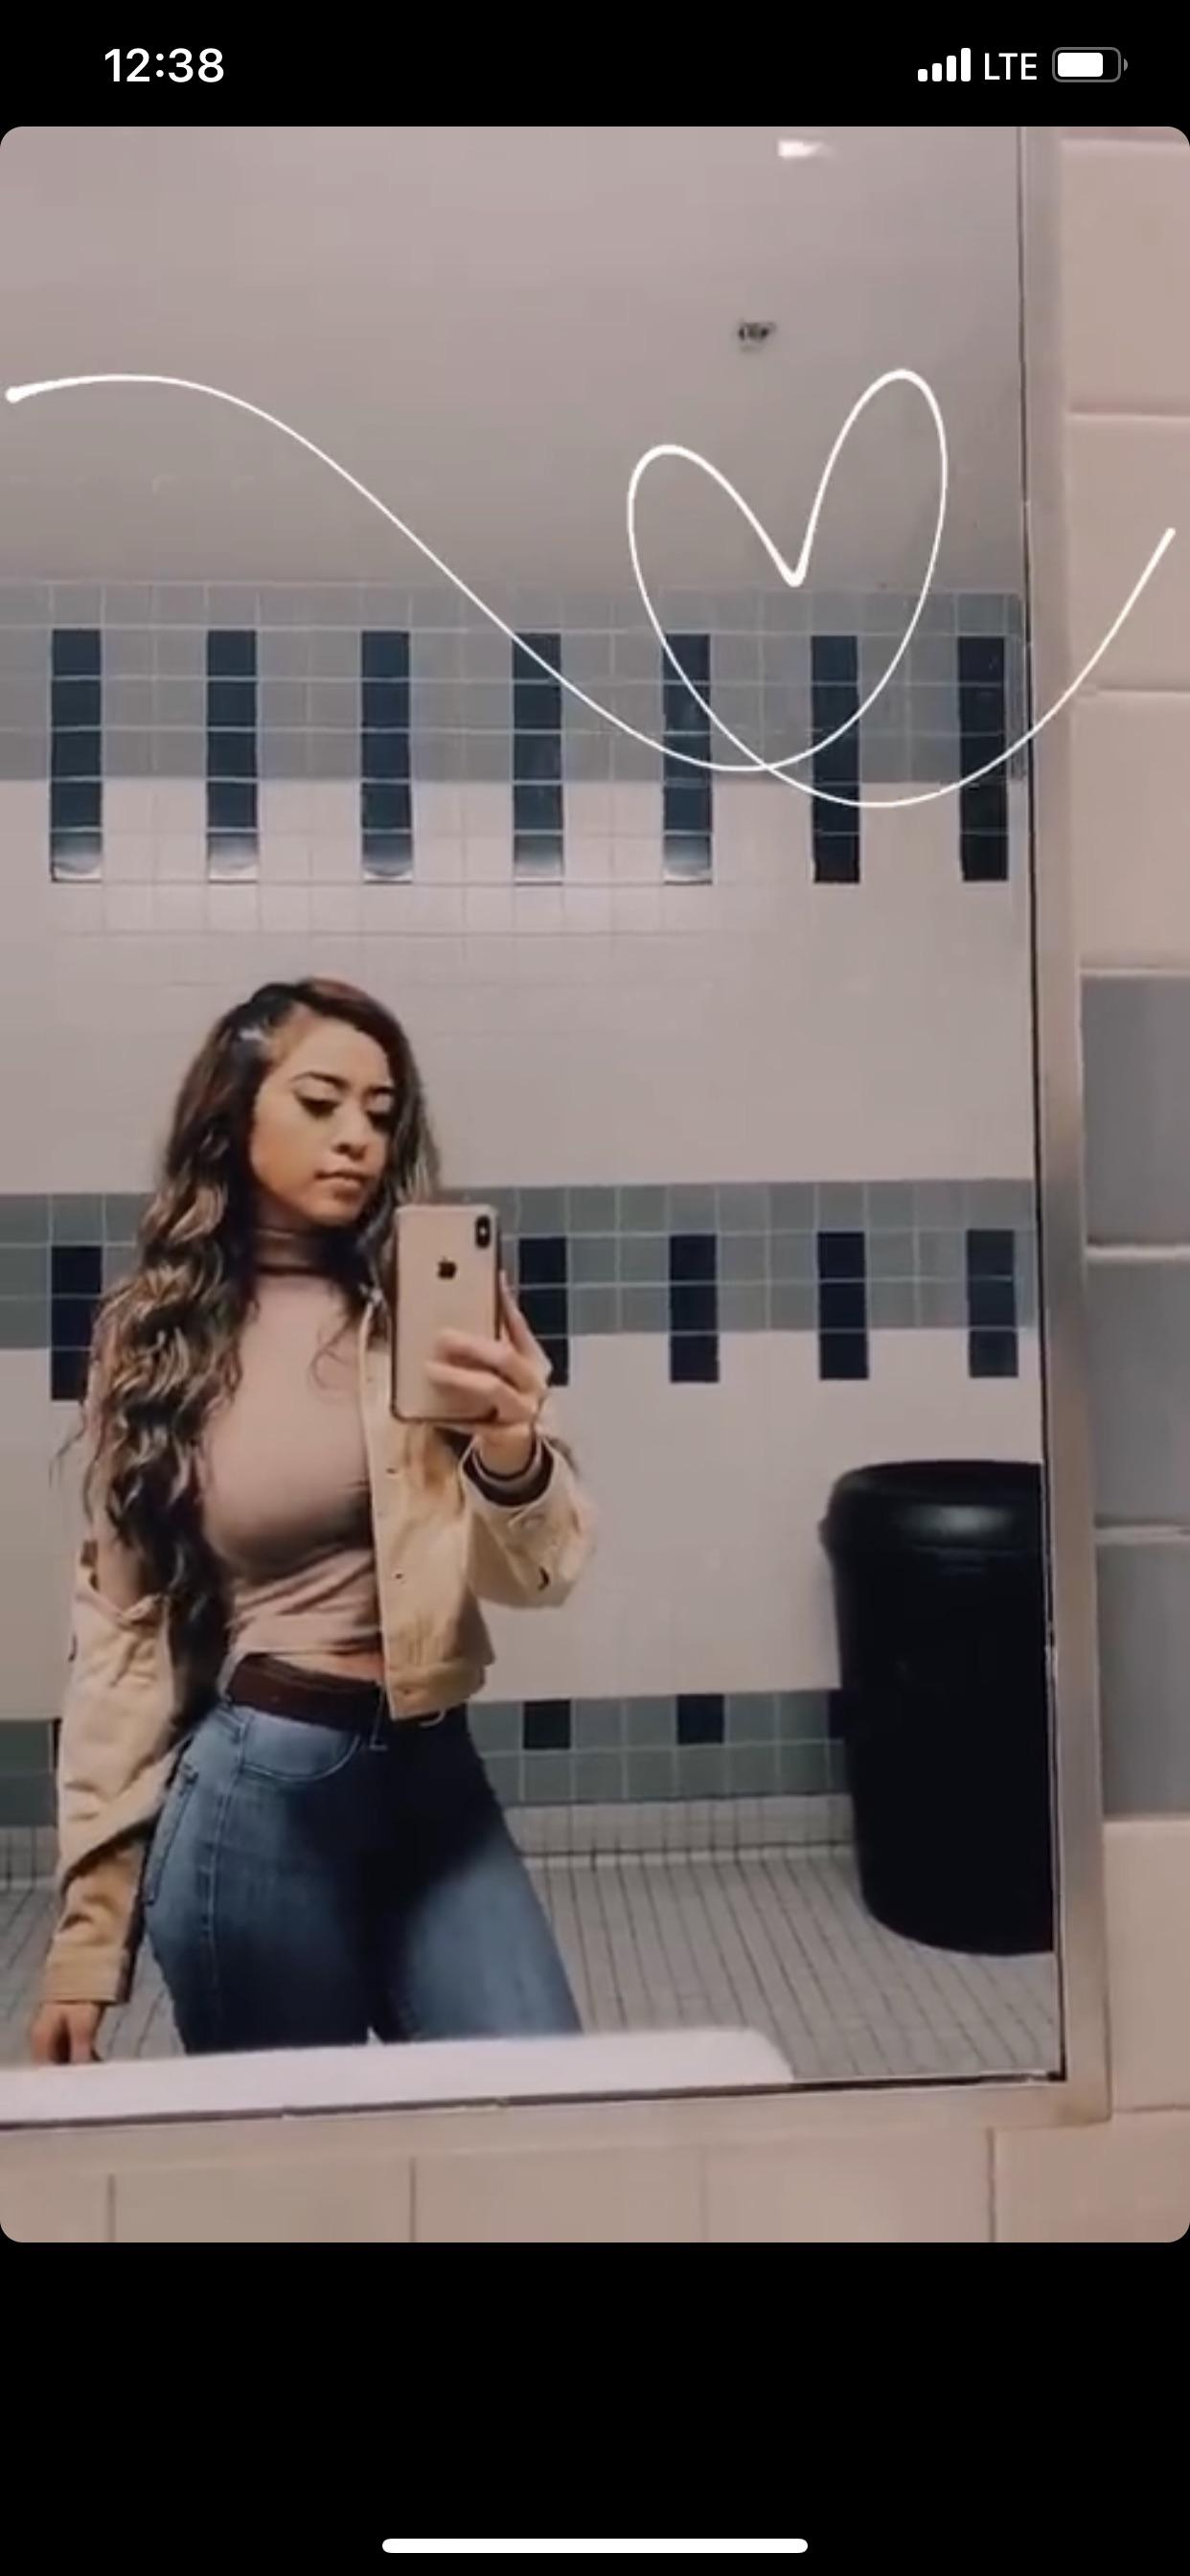 Bathroom Selfie Scrolller